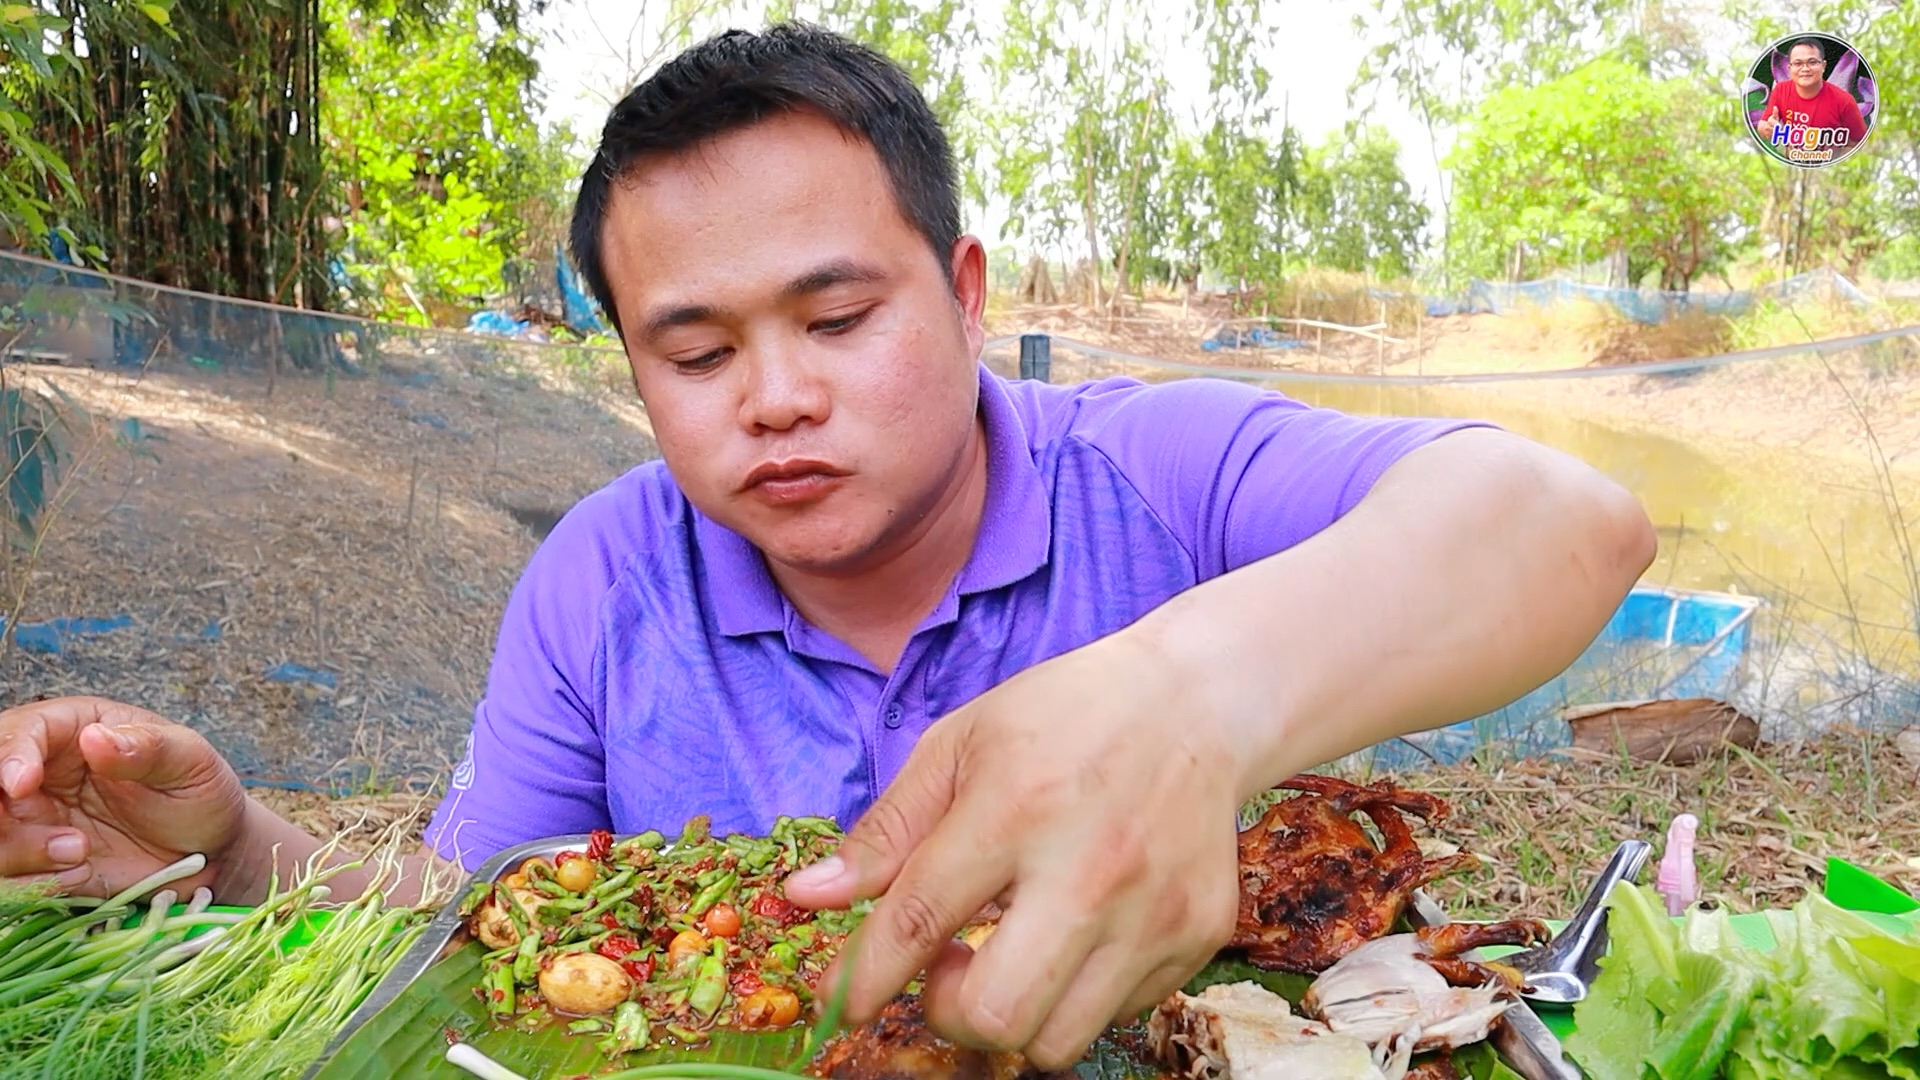 泰国嗯哼哥吃播 今天吃烤田鼠和炒豆角 糯米饭 和各种绿叶菜